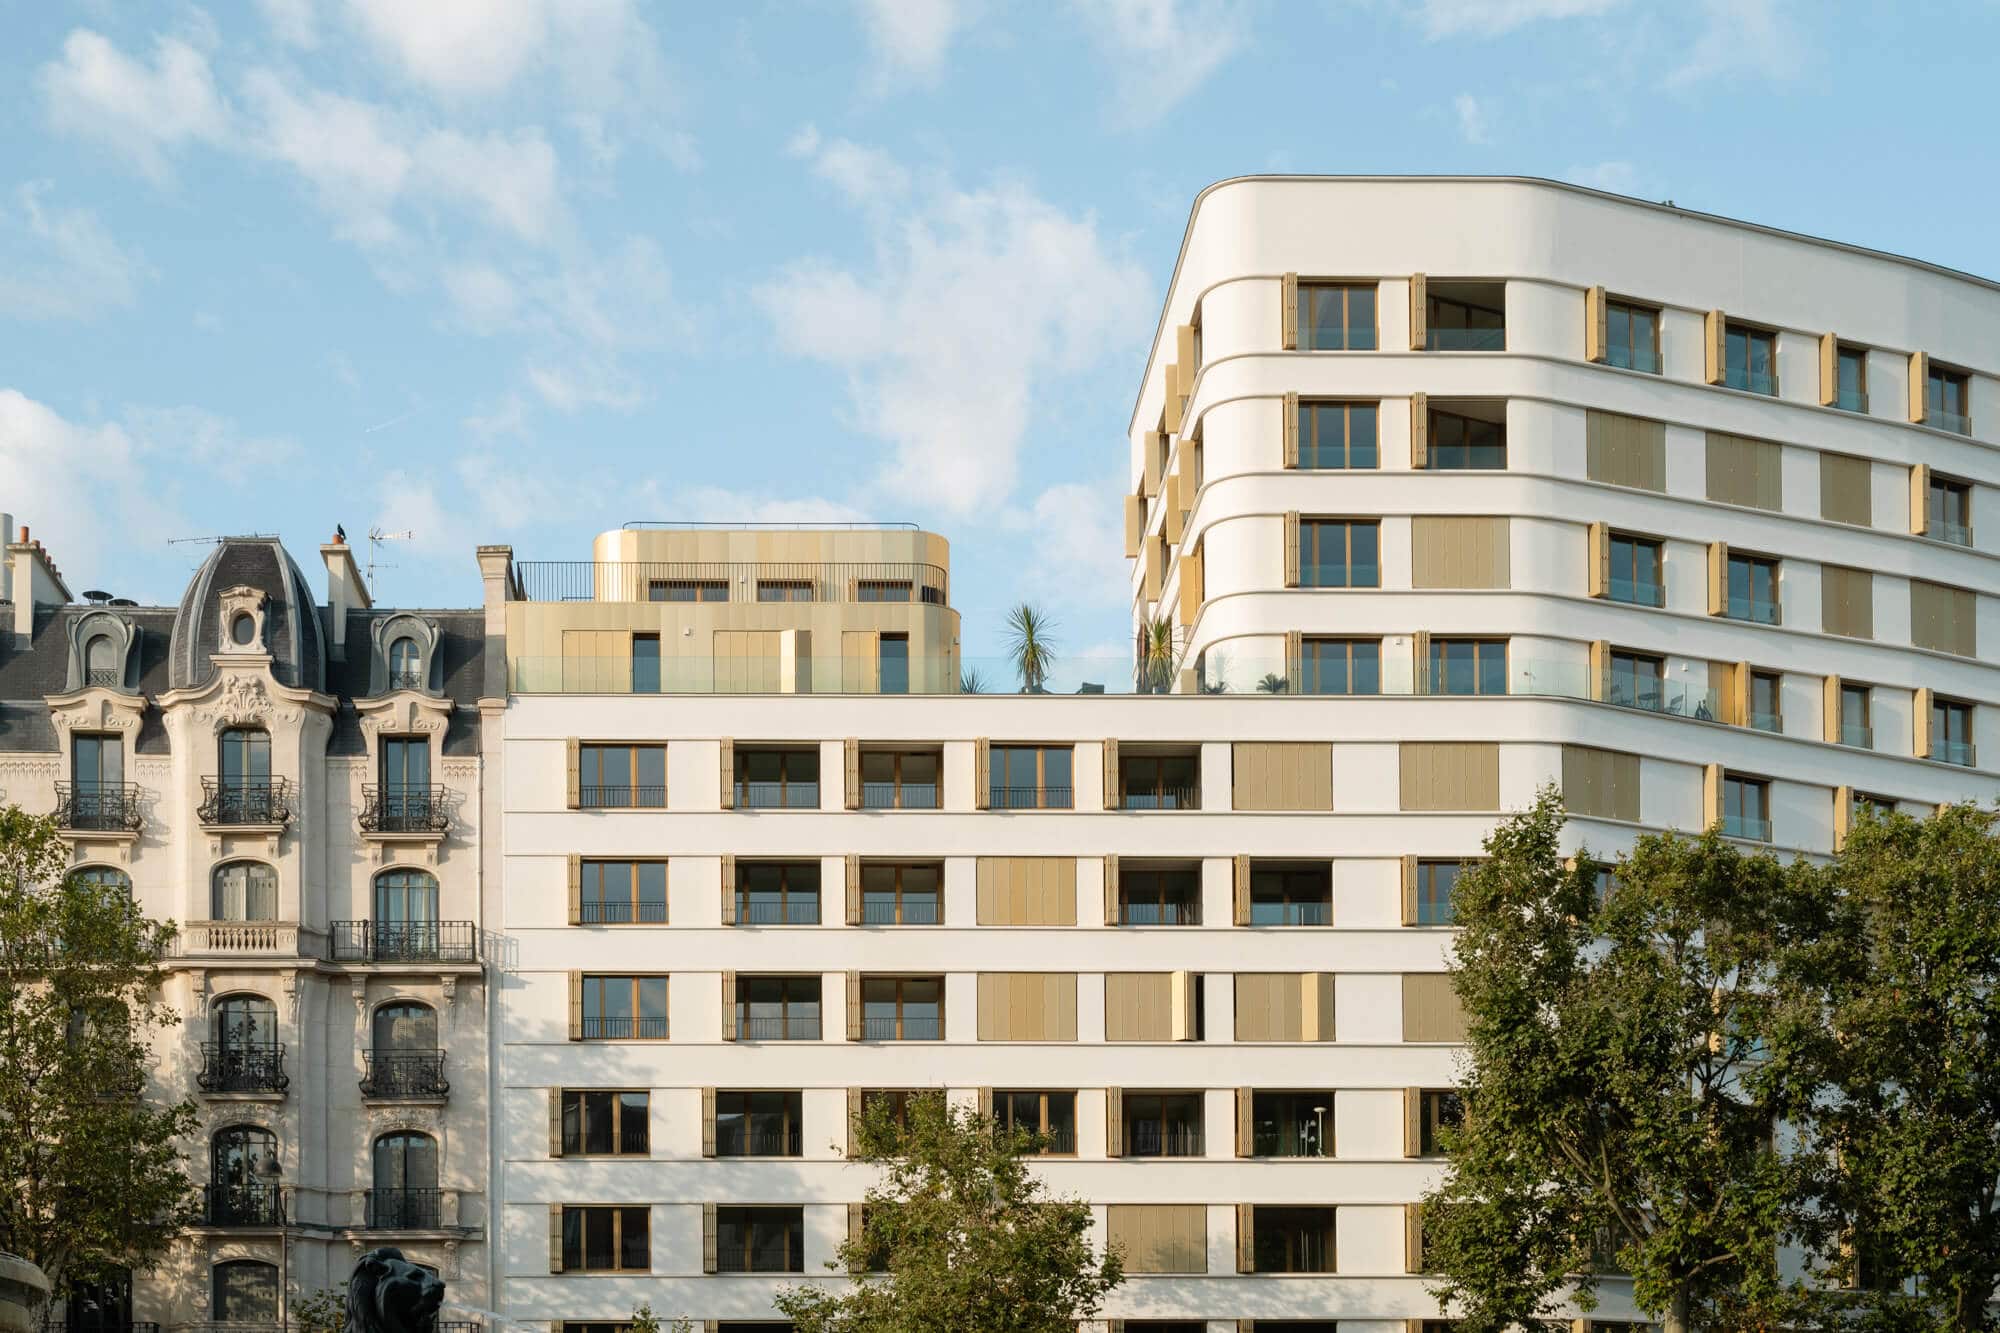 Baumschlager Eberle Architekten haben einen geförderten Wohnbau in Paris realisiert. Es gelang ihnen